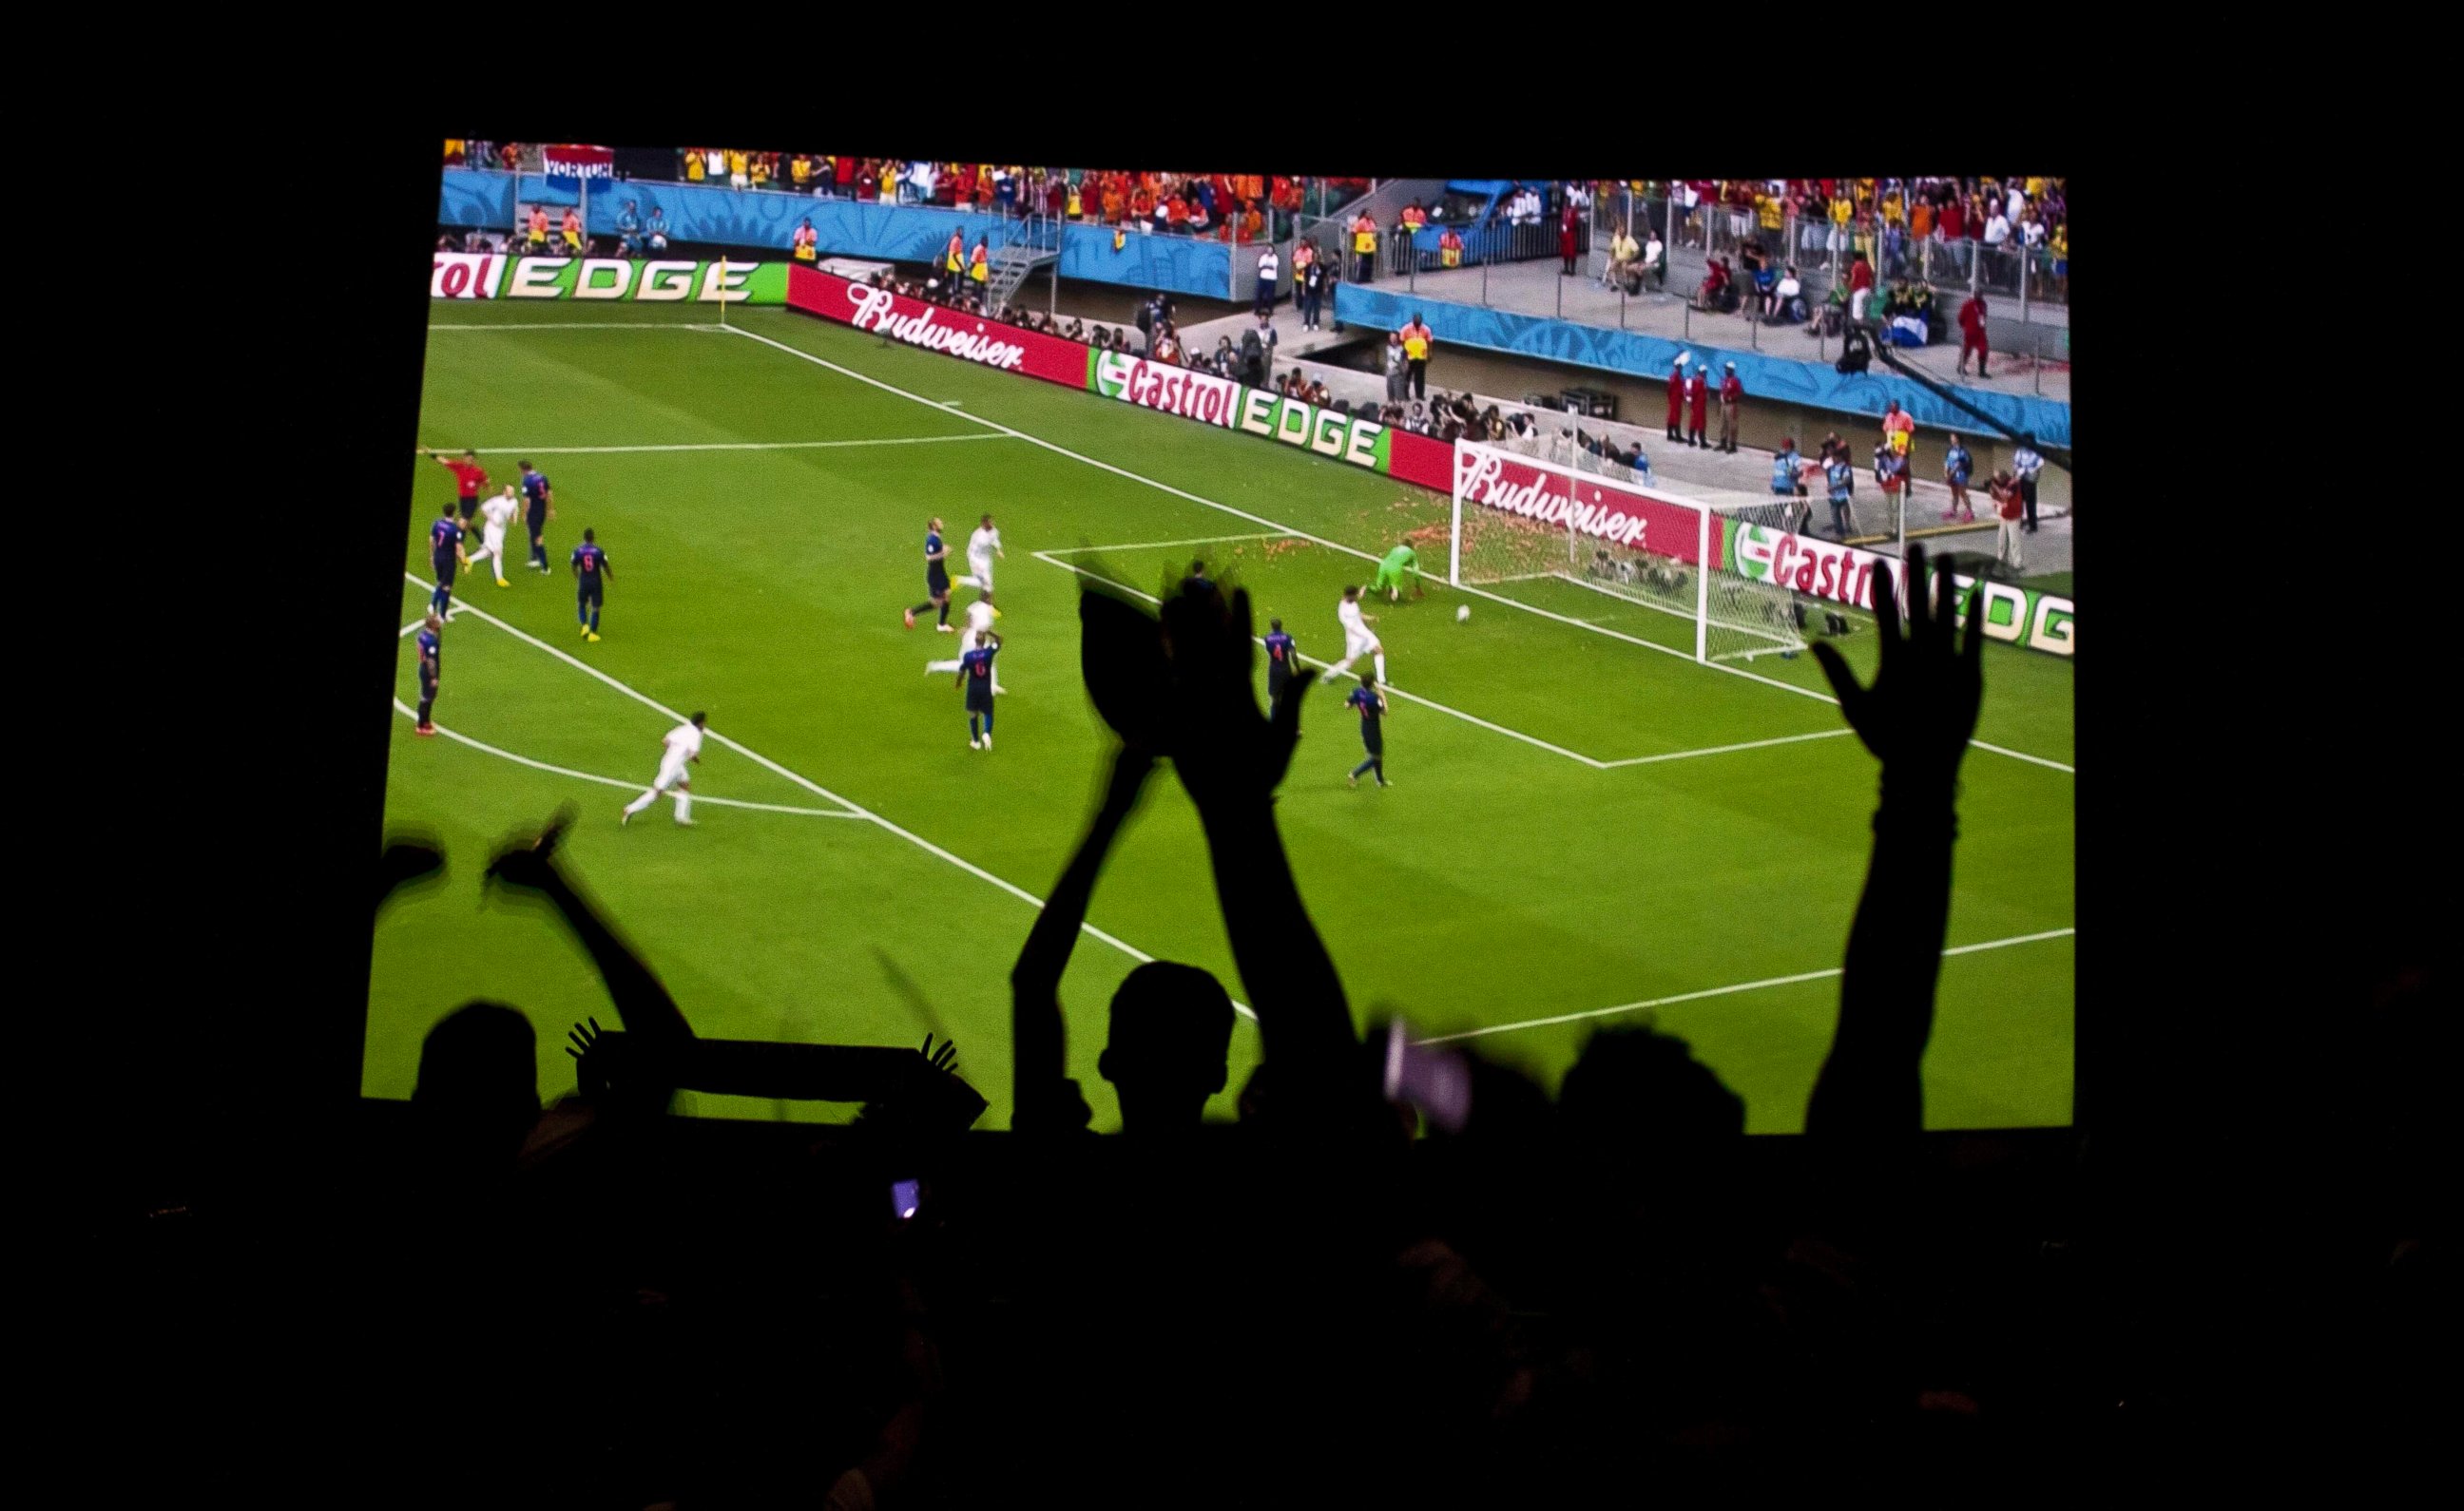 Трансляция футбольных матчей лайв. Футбольные трансляции на большом экране. Спортивные трансляции на ТВ. Футбол на экране. Трансляция футбольного матча.